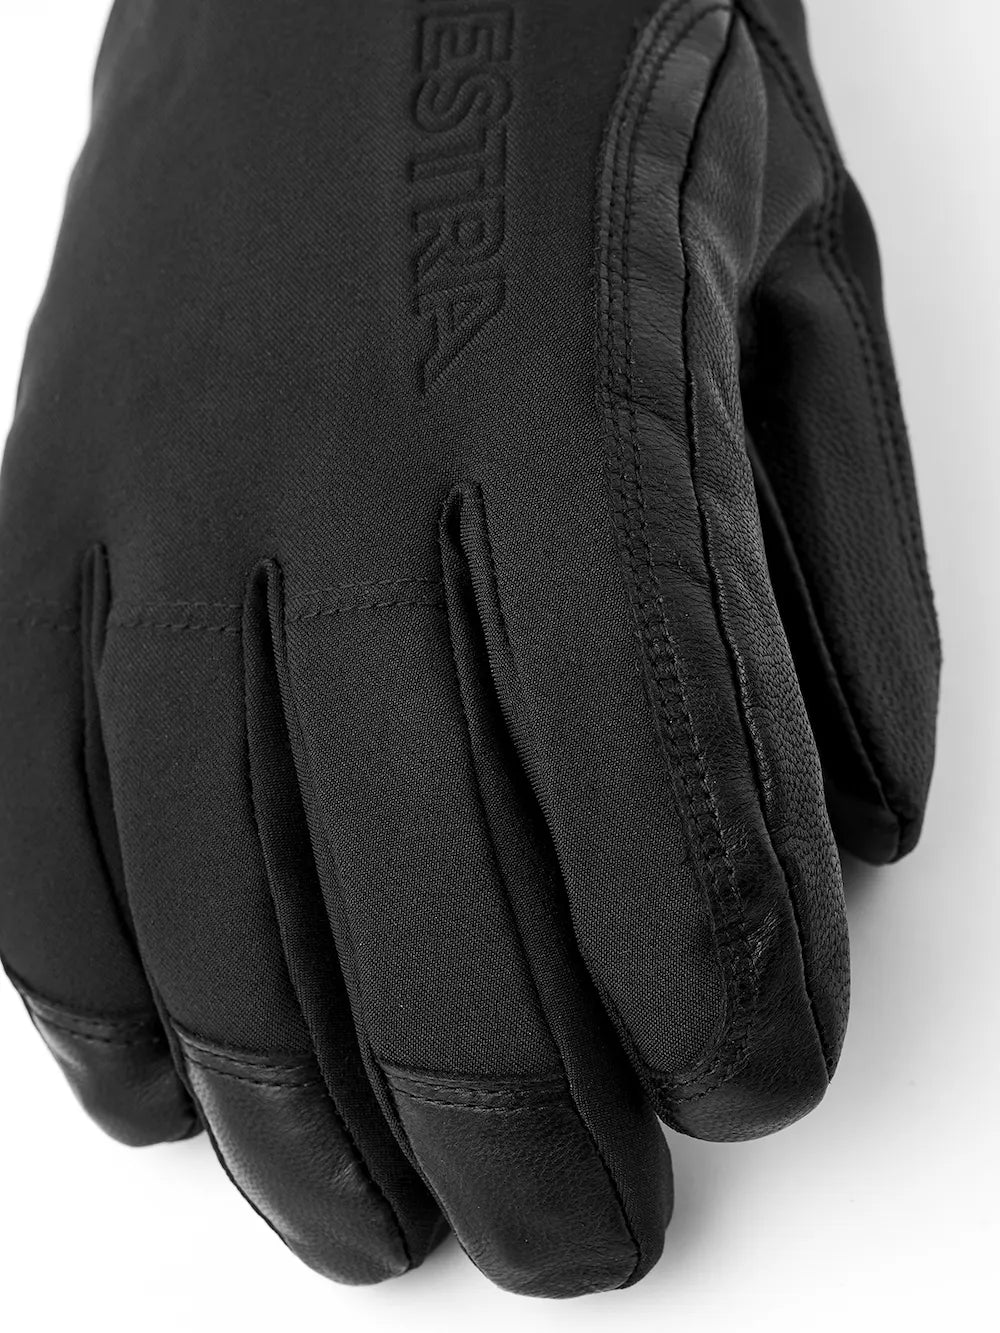 Hestra Alpine Short GORE-TEX Glove Black Snow Gloves